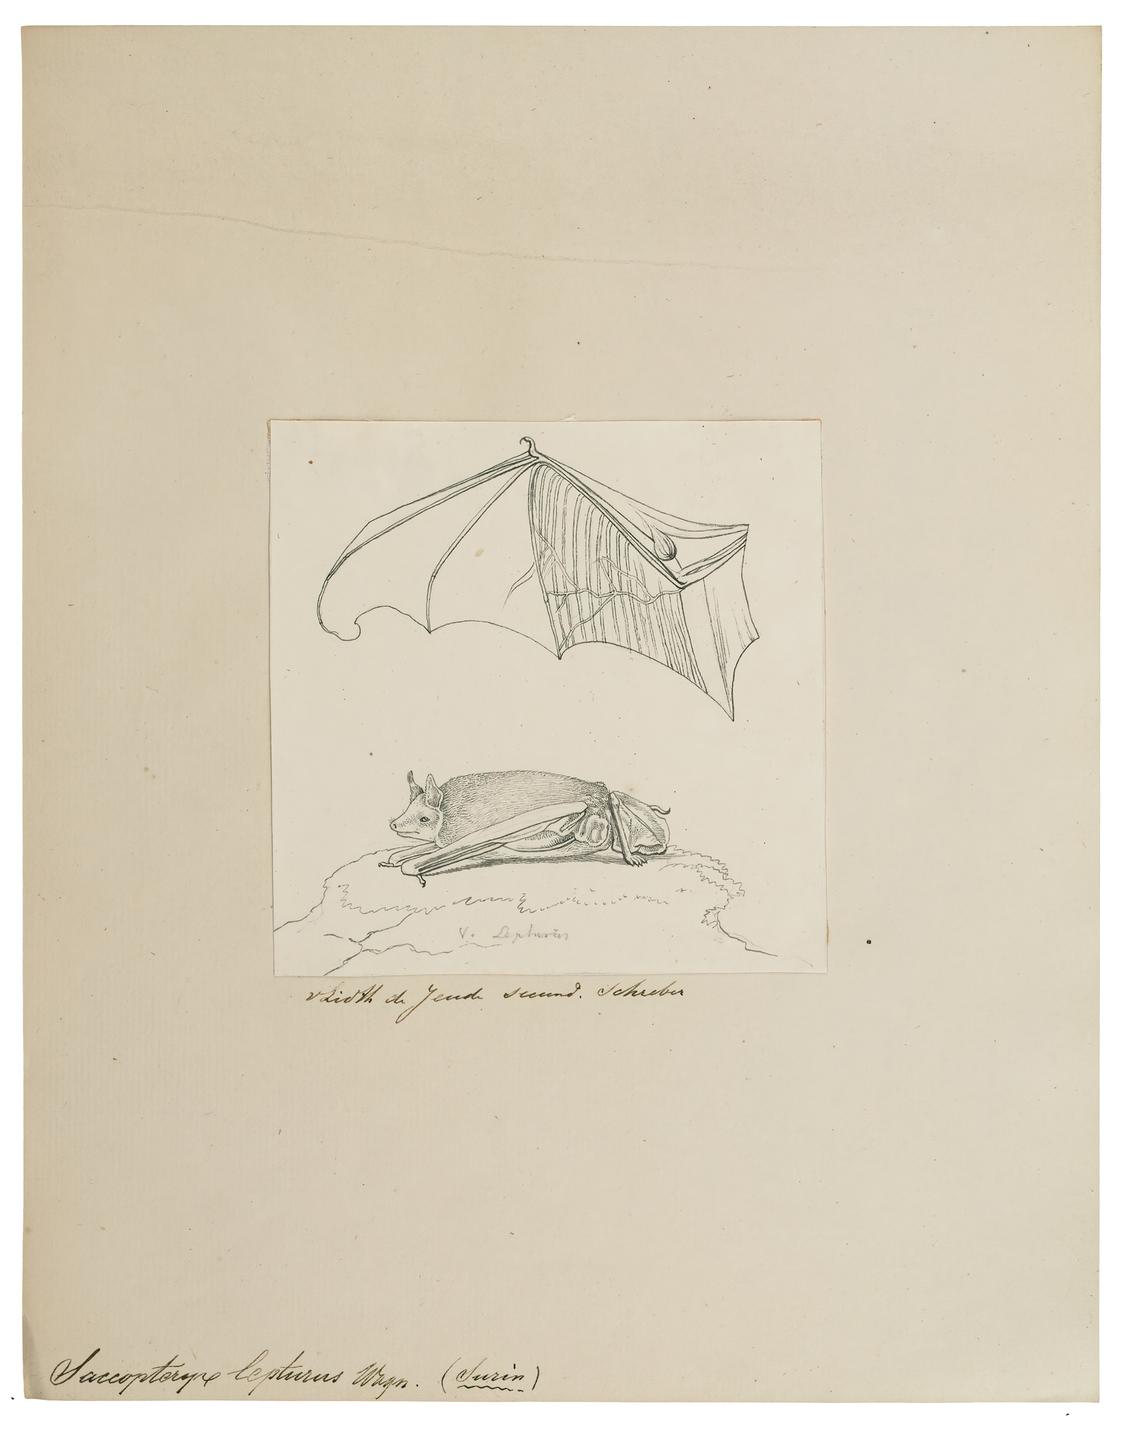 Eine historische Biologiezeichnung der Sackfledermaus (Saccopteryx lepturus), ca. 1700-1880.